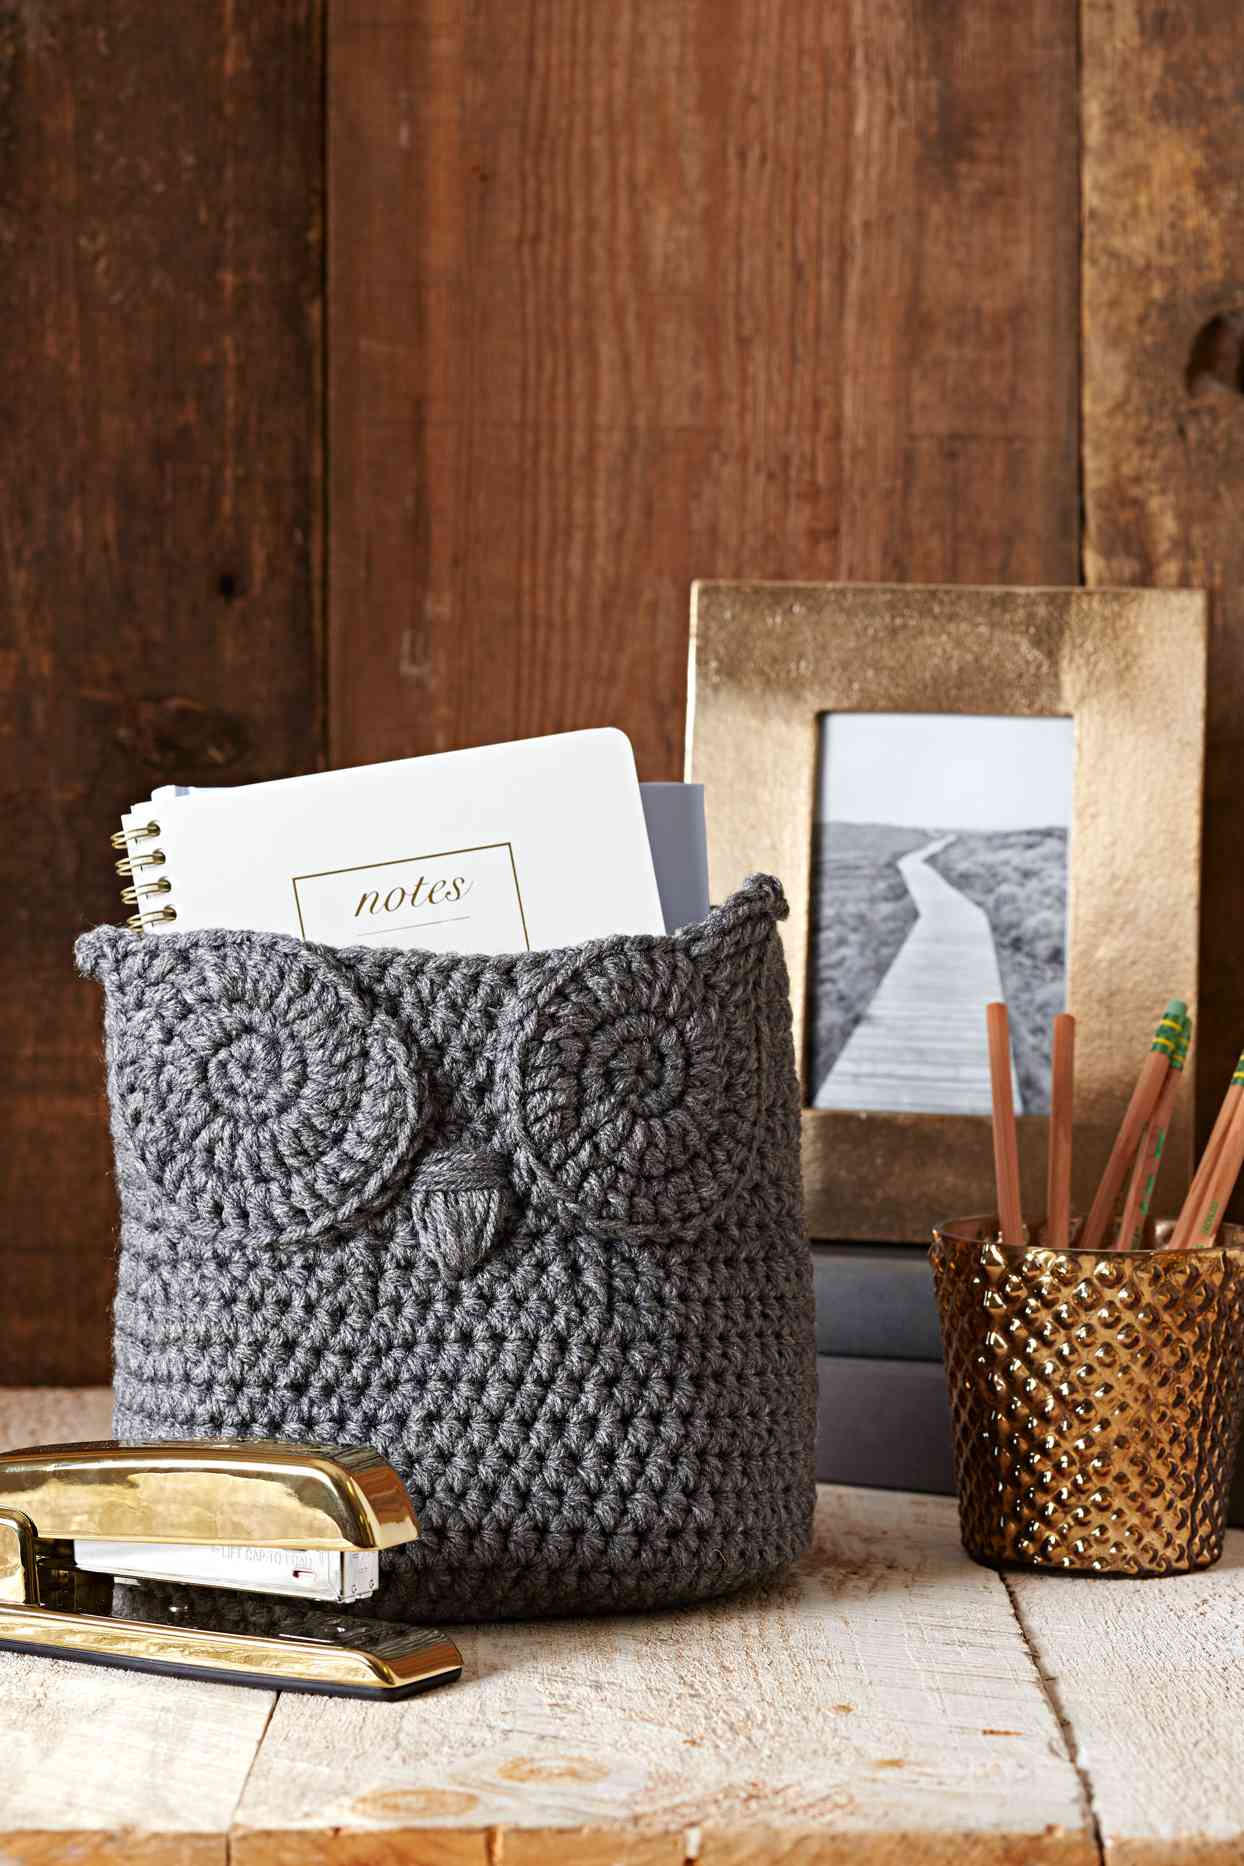 Crochet an Owl Basket